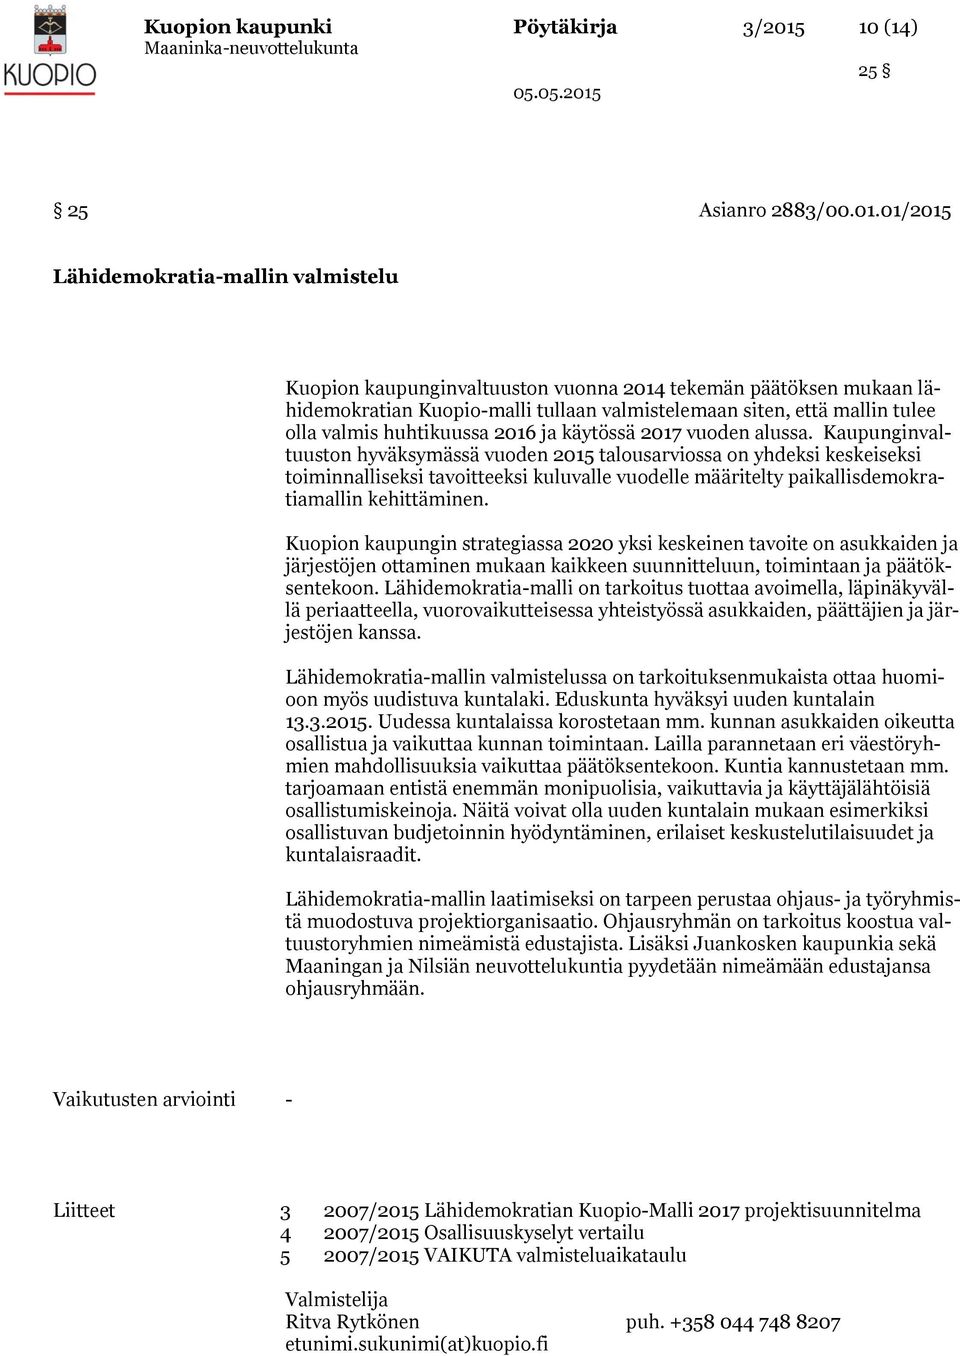 01/2015 Lähidemokratia-mallin valmistelu Kuopion kaupunginvaltuuston vuonna 2014 tekemän päätöksen mukaan lähidemokratian Kuopio-malli tullaan valmistelemaan siten, että mallin tulee olla valmis